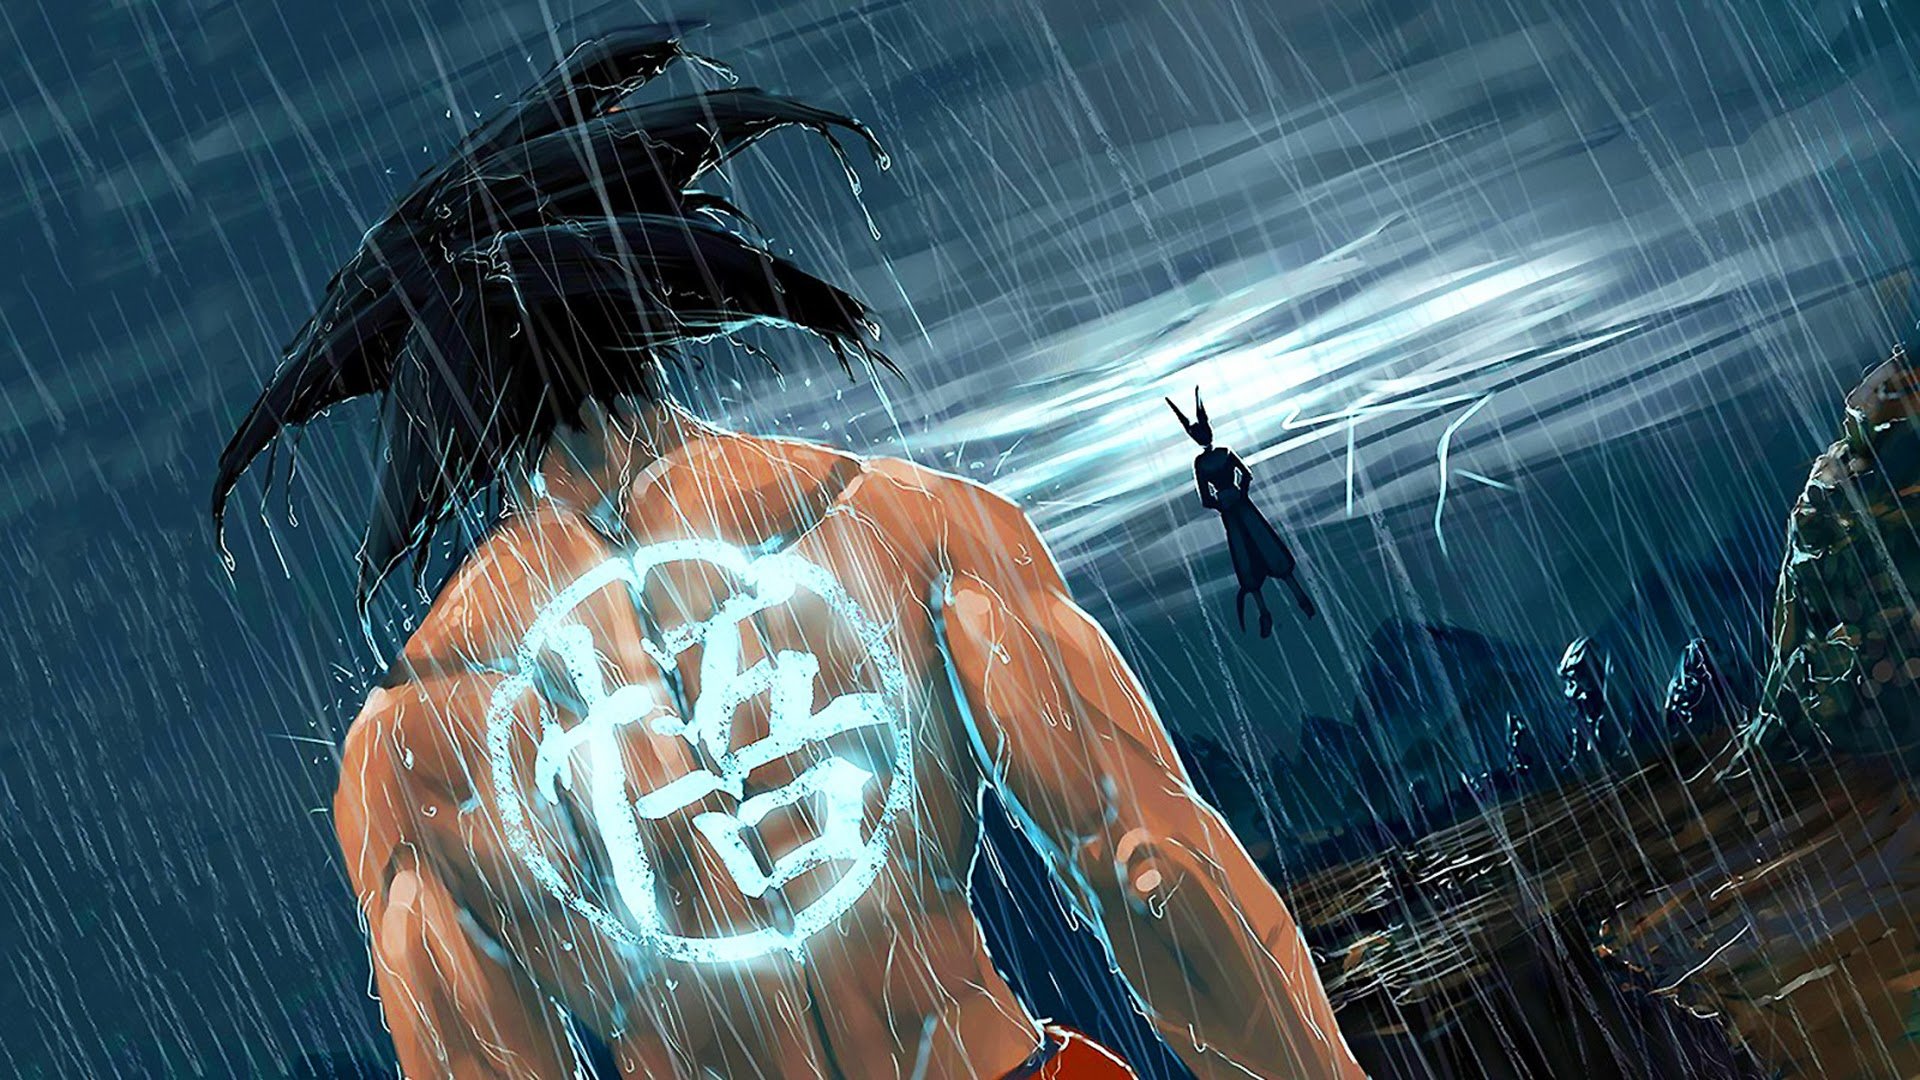 Wallpaper Broly Superman Darkseid Doomsday Battles Dragon Ball